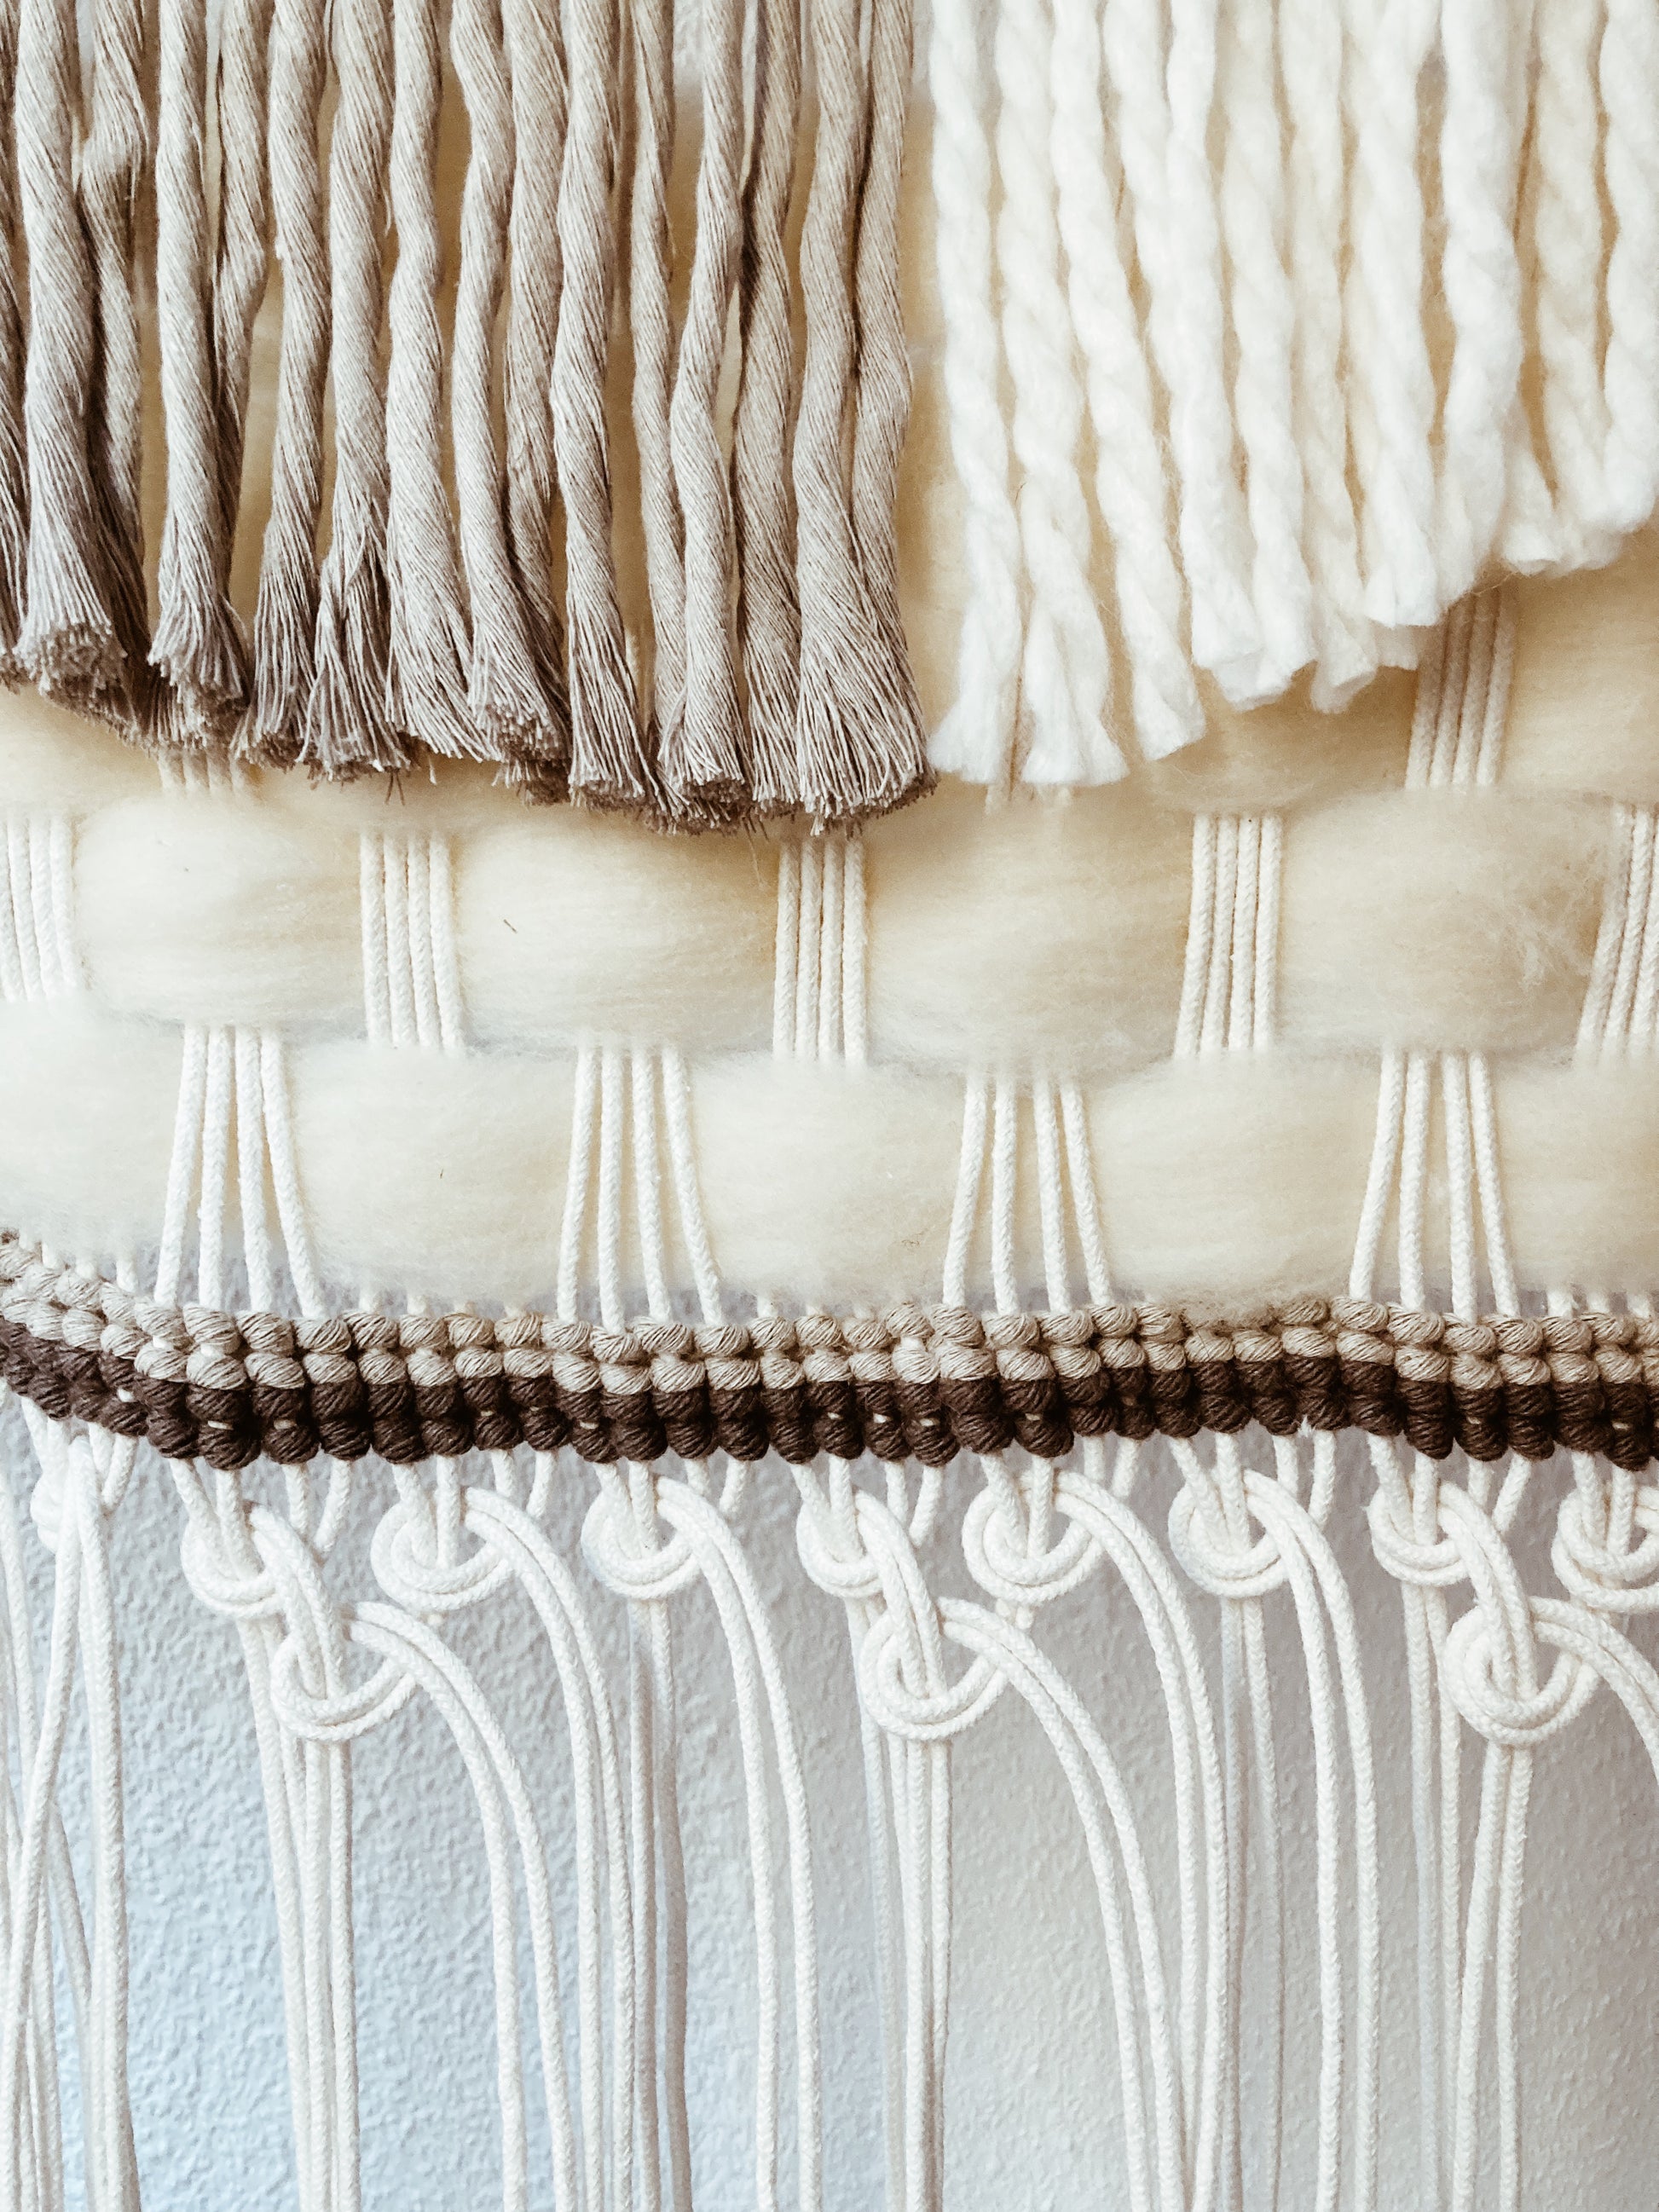 La Tapicera: Descalzadora tapizada con macabro toile de jouy